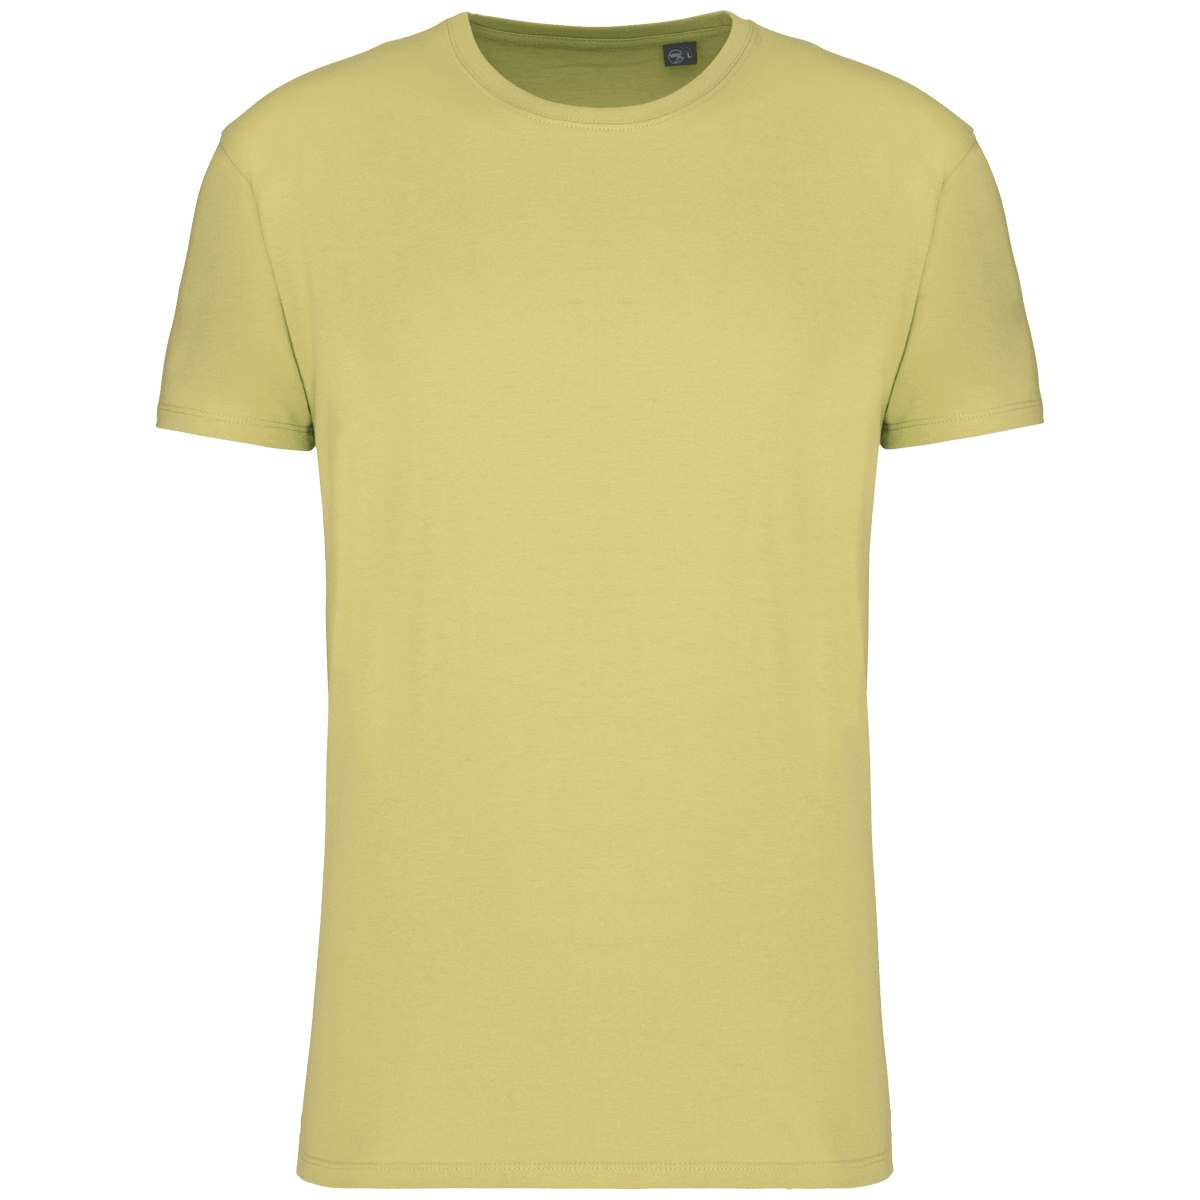 T-Shirt Bio Unisexe 190 Gr Personnalisé | 100% Coton Bio | T-Shirt Sans Étiquette De Marque Lemon Yellow